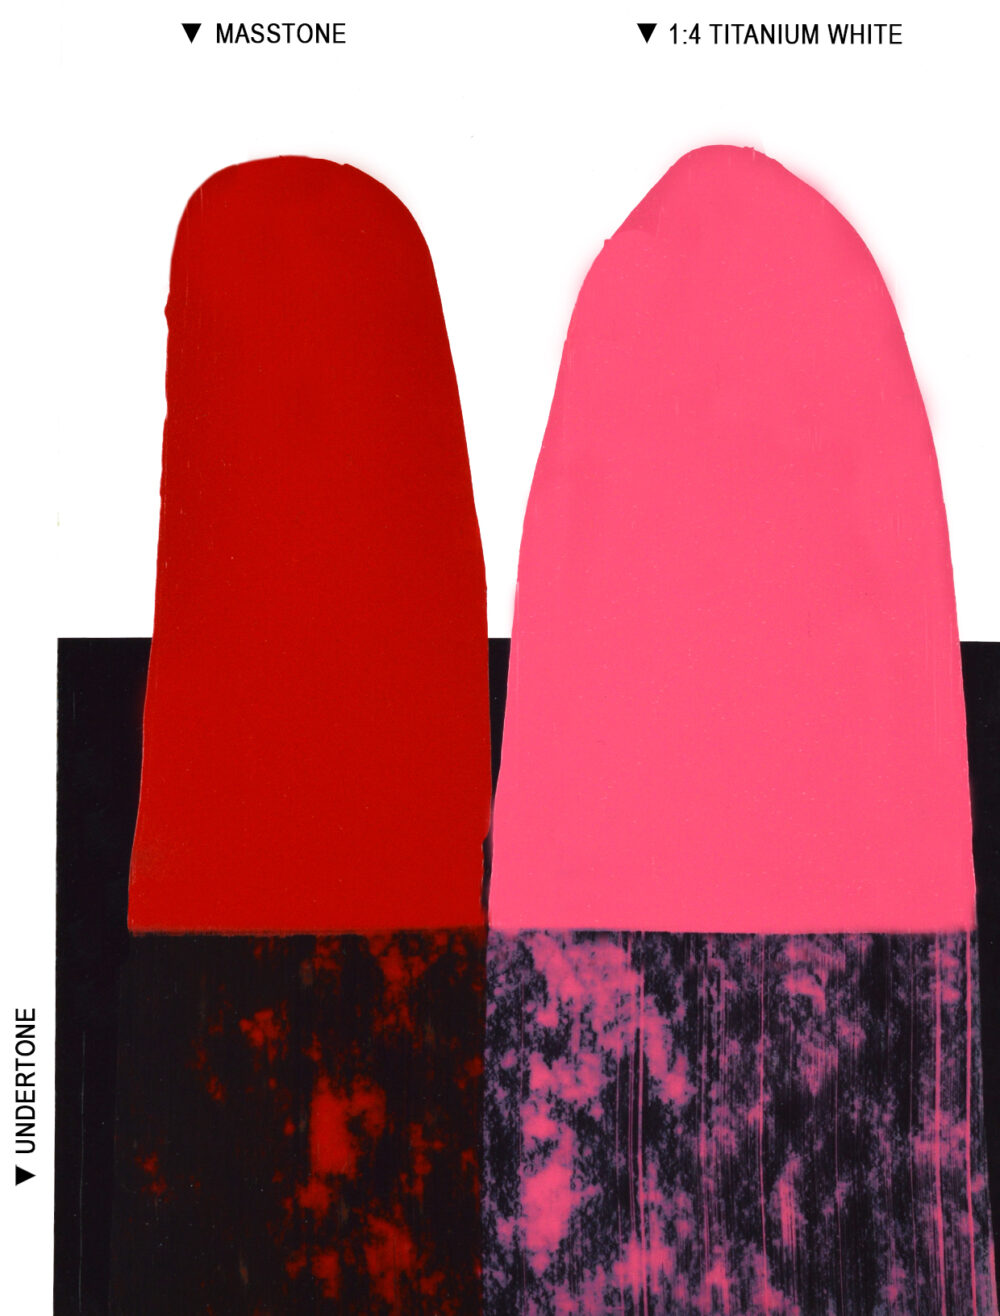 Seletøj bølge på en ferie Pyrrole Red Oil Colour - Langridge Artist Colours